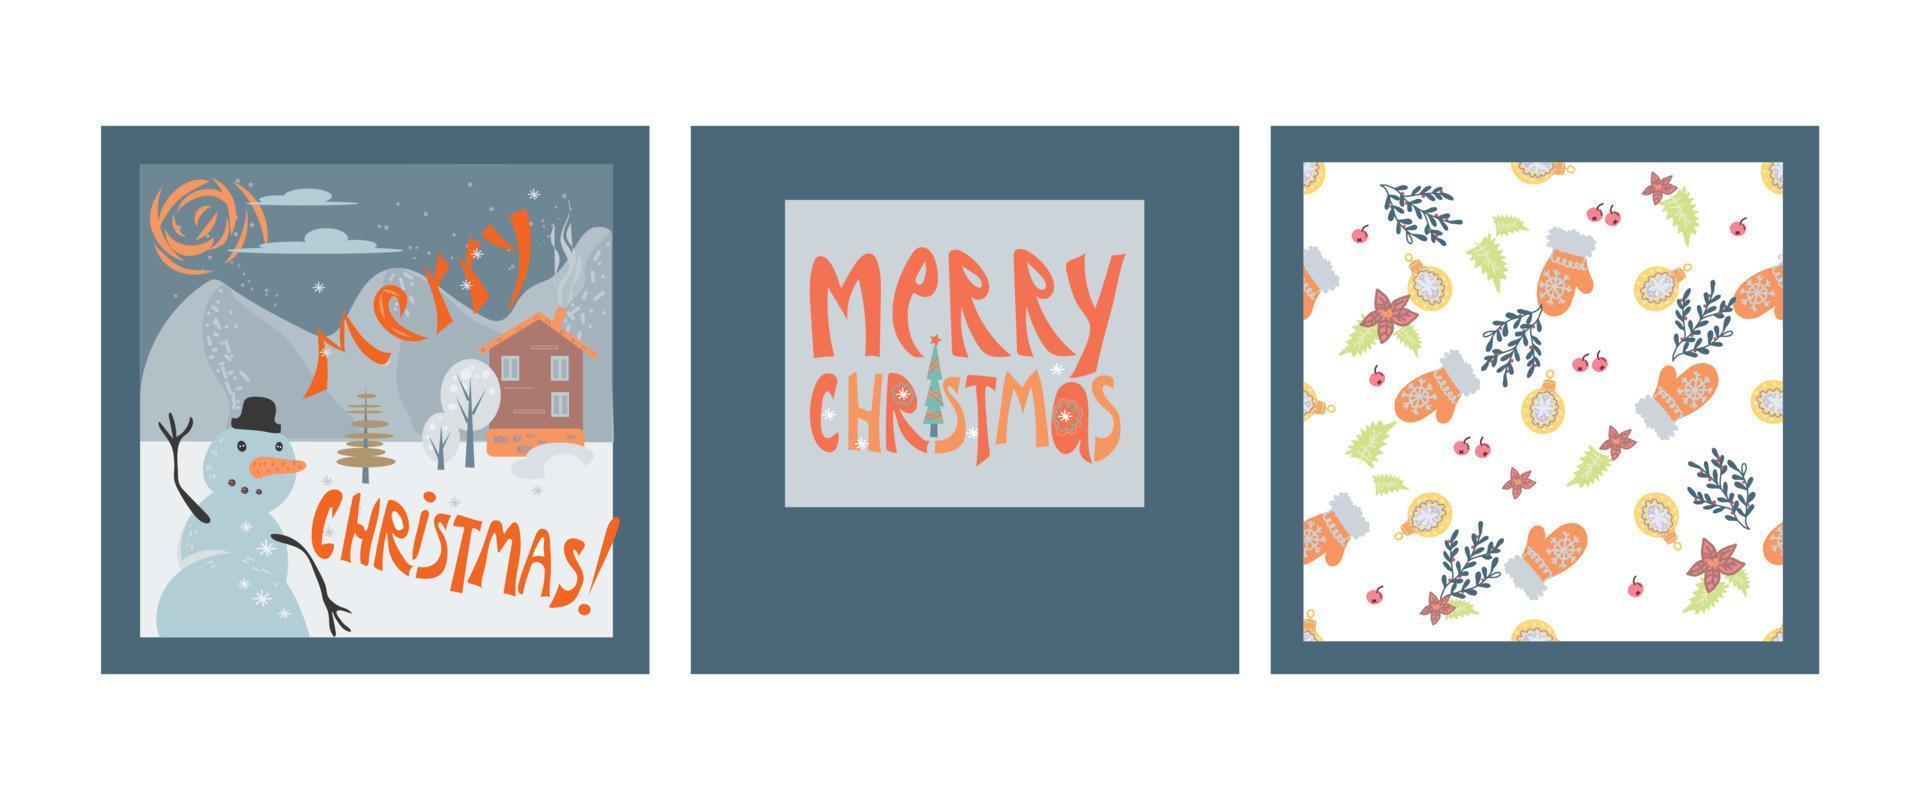 conjunto de tres tarjetas de navidad - patrón sin costuras, muñeco de nieve y texto de saludo, ilustración vectorial plana. plantilla de banners, carteles e invitaciones de vacaciones de invierno de navidad y año nuevo. vector